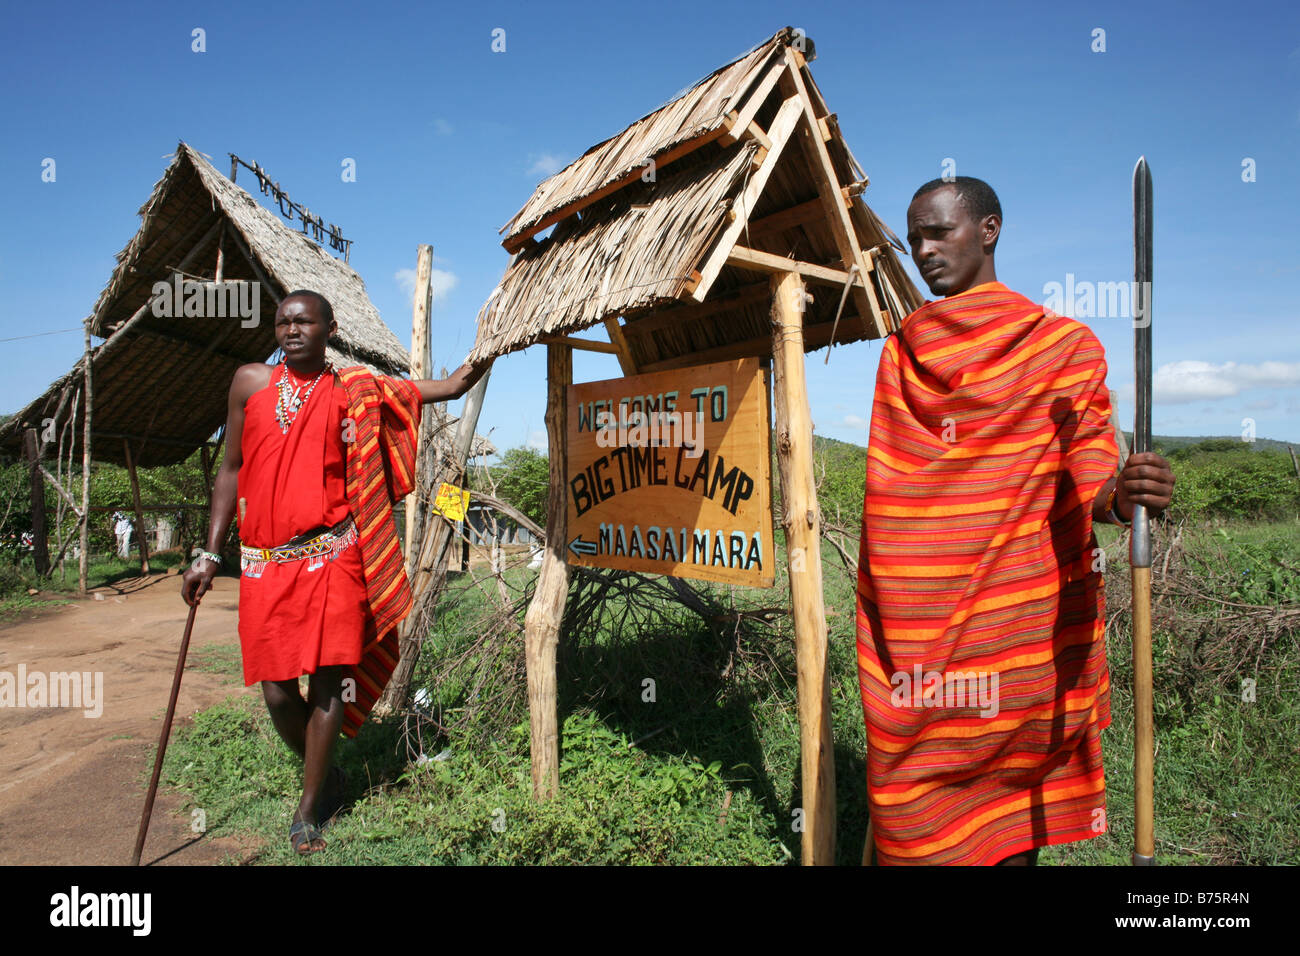 El parque natural de Massai Mara en Kenia es un lugar famoso para los turistas a visitar sus varios alojamientos de lujo en y alrededor del parque donde se puede pernoctar los precios son altos, de una sola habitación durante la temporada alta turística es no menos de 500 US, pero también hay algunos campamentos más baratos disponibles en el parque Foto de stock